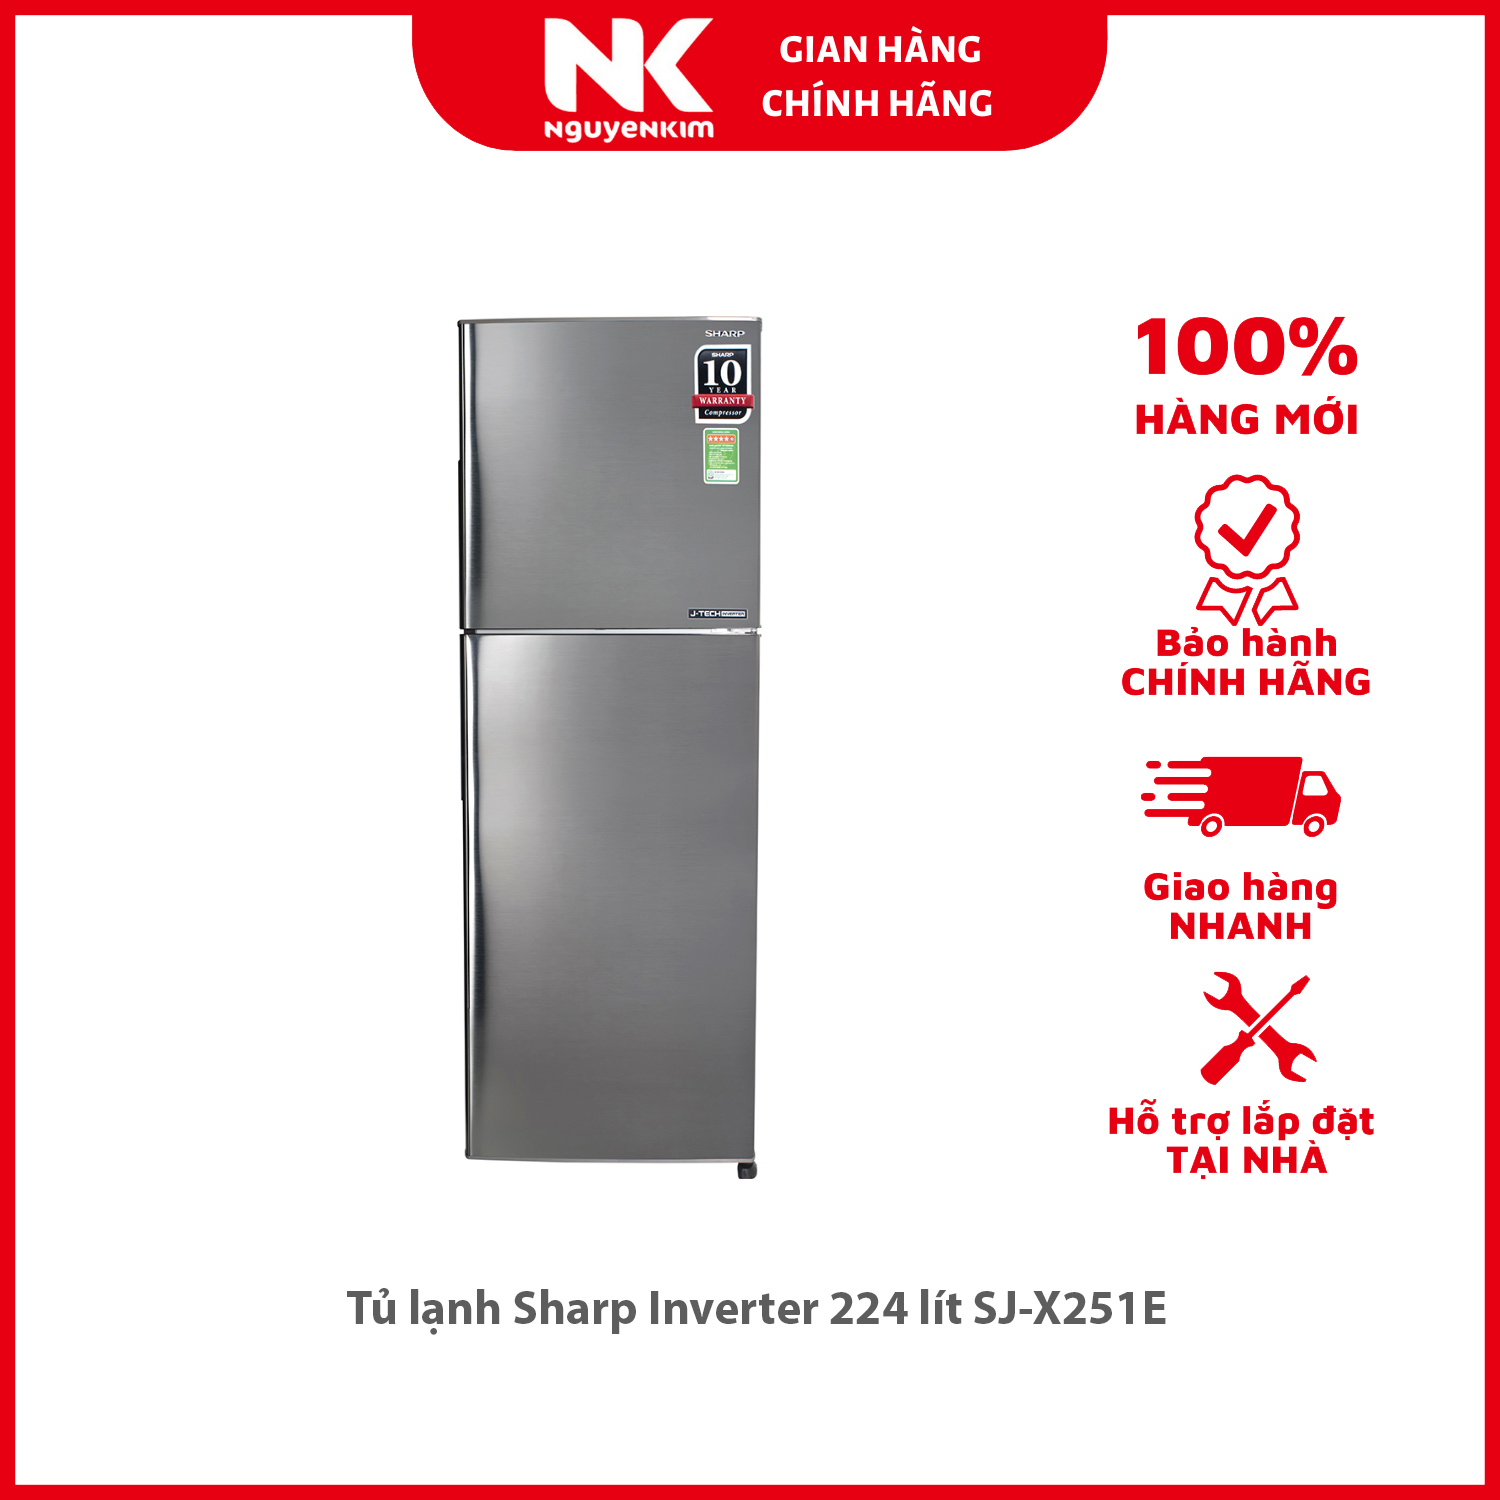 Tủ lạnh Sharp Inverter 224 lít SJ-X251E - Hàng chính hãng [Giao hàng toàn quốc]